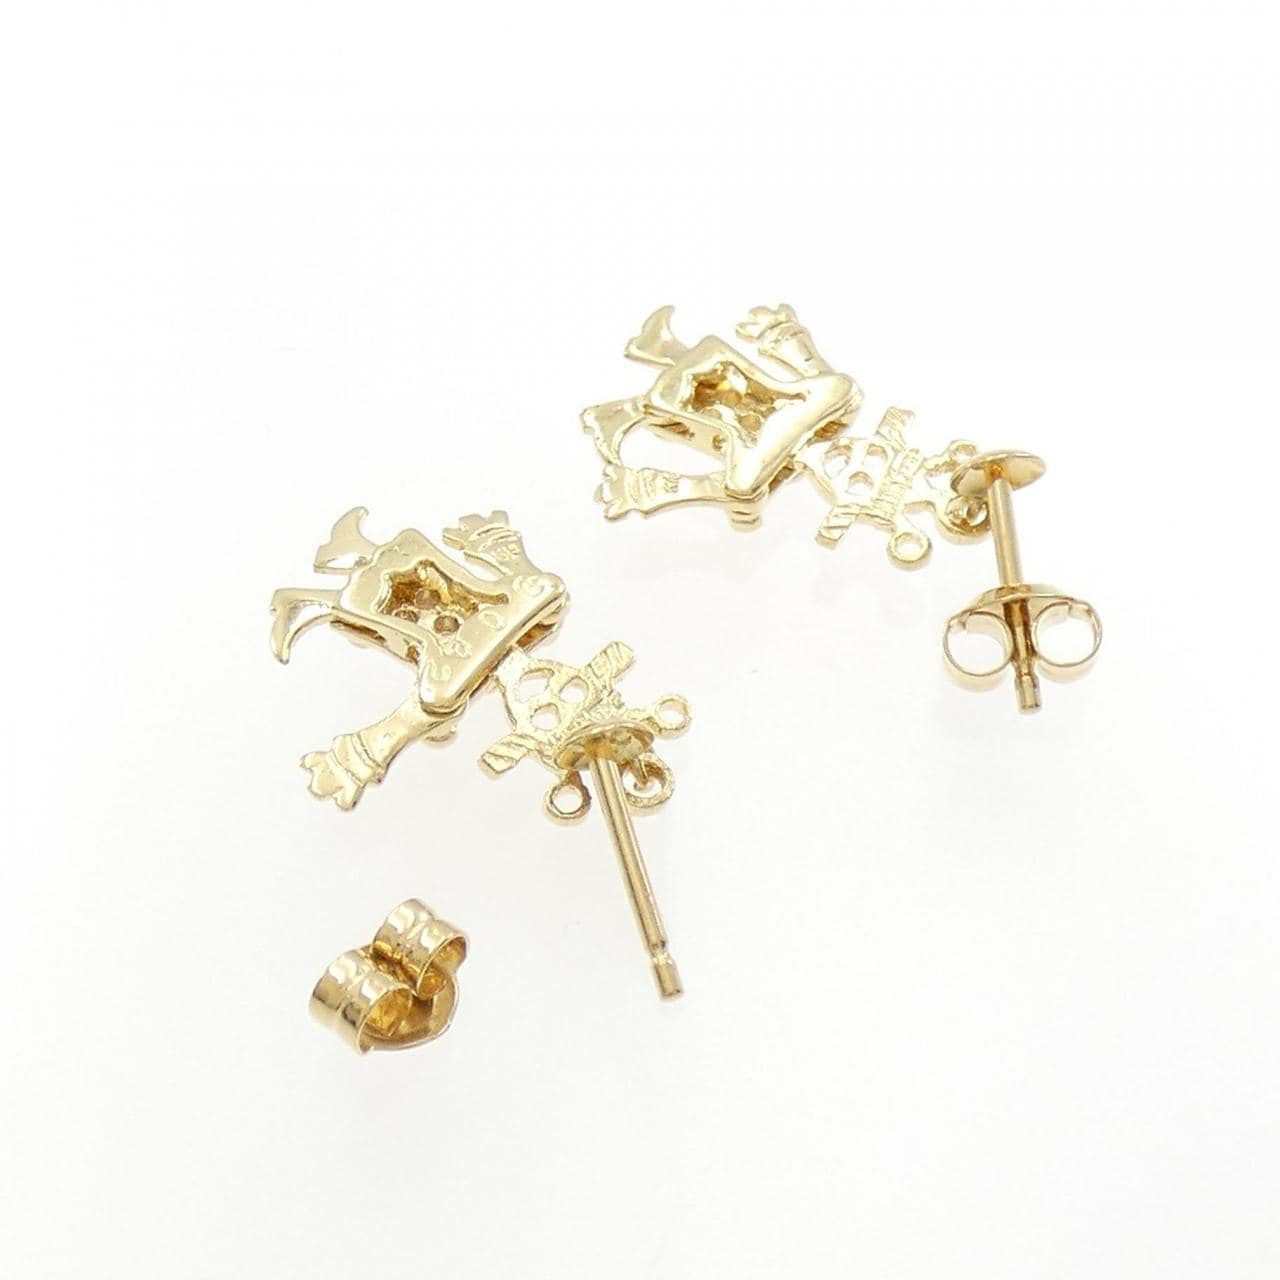 K18YG Diamond earrings 0.02CT